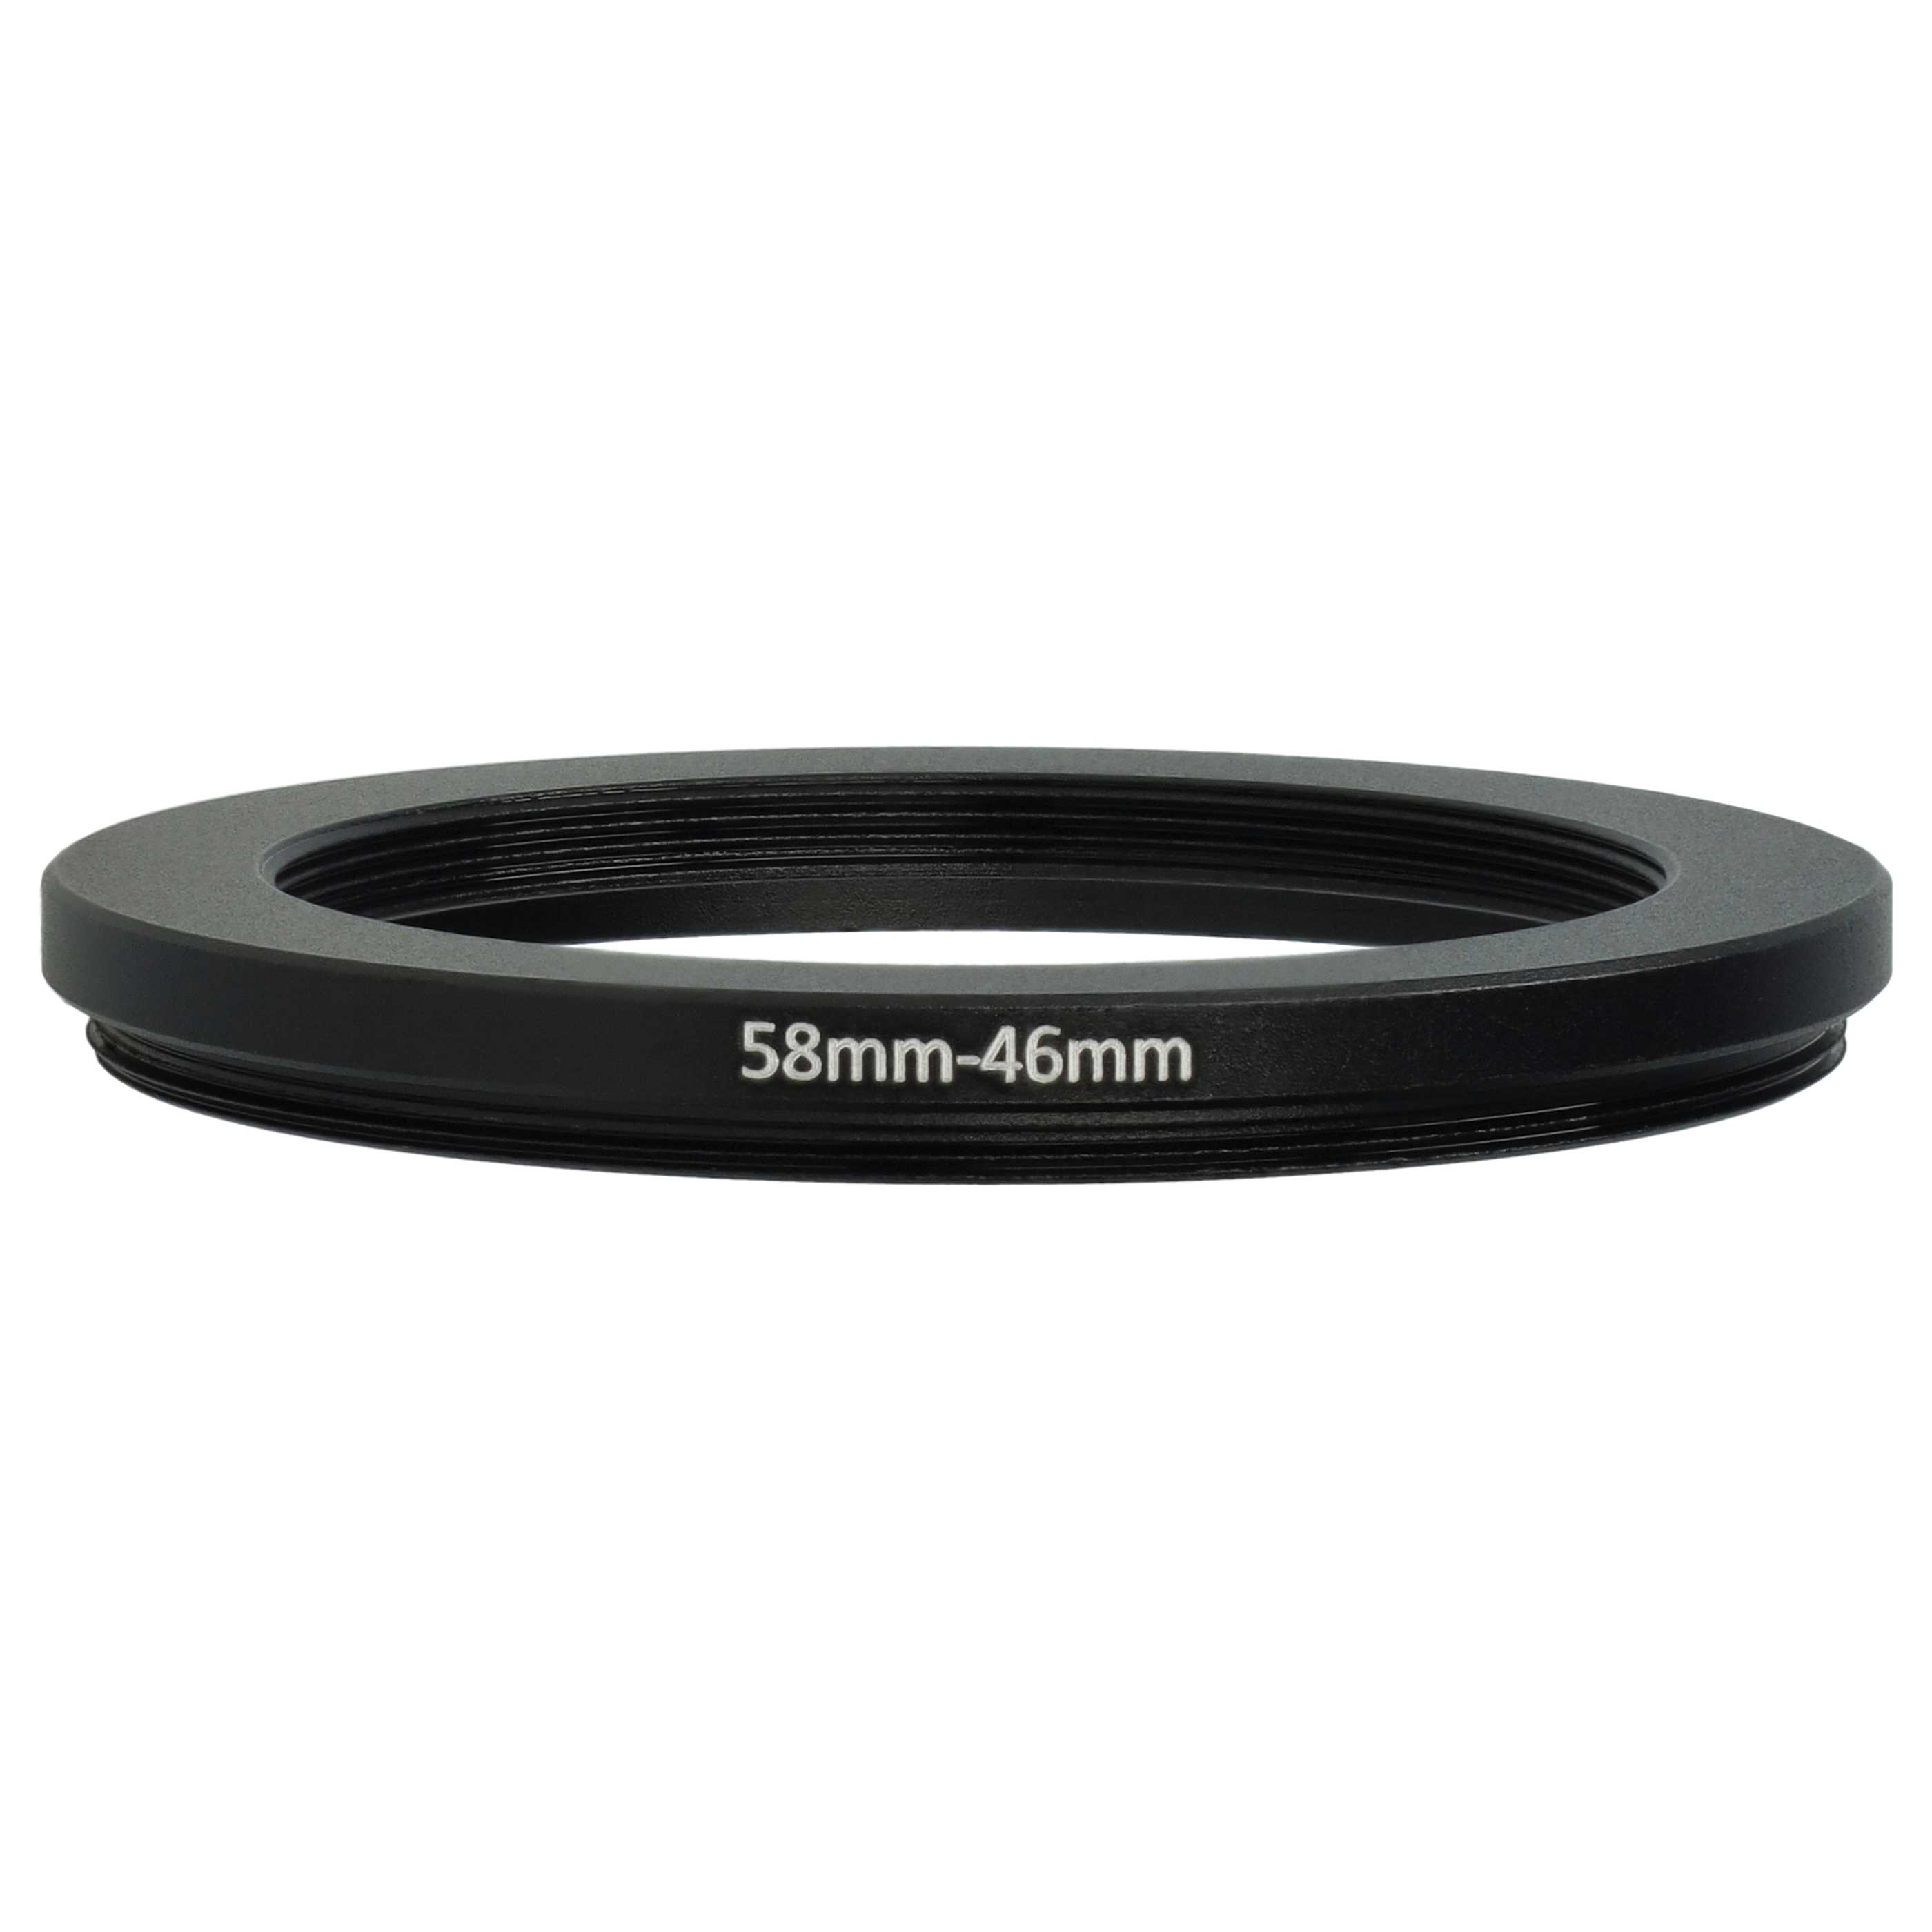 Anillo adaptador Step Down de 58 mm a 46 mm para objetivo de la cámara - Adaptador de filtro, metal, negro